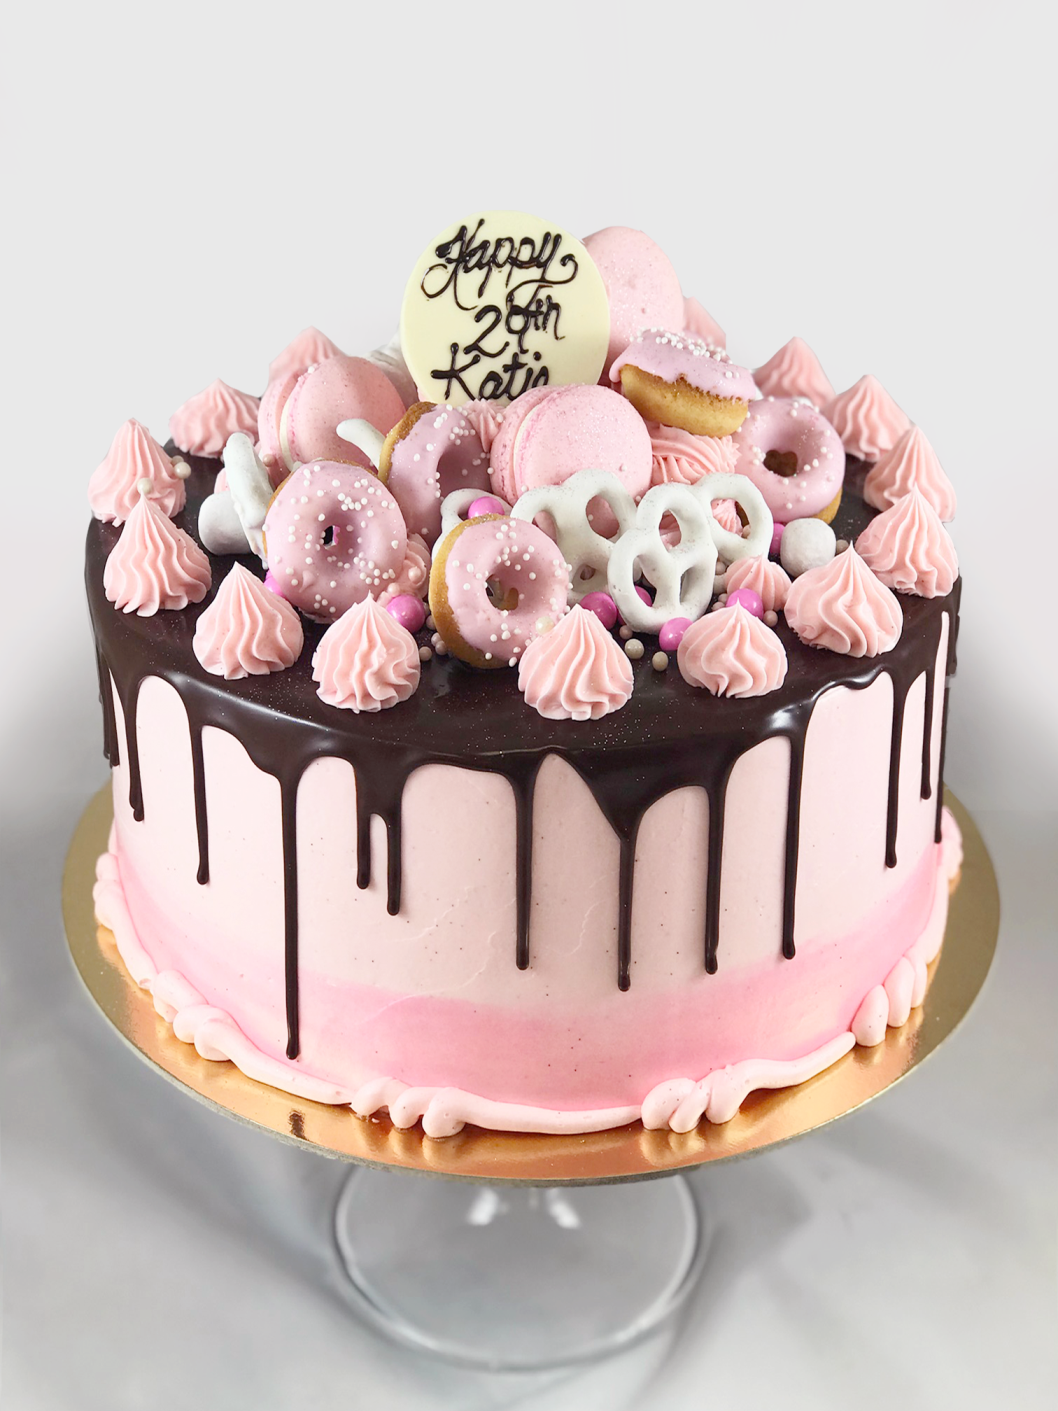 Whippt Desserts - fully loaded cake